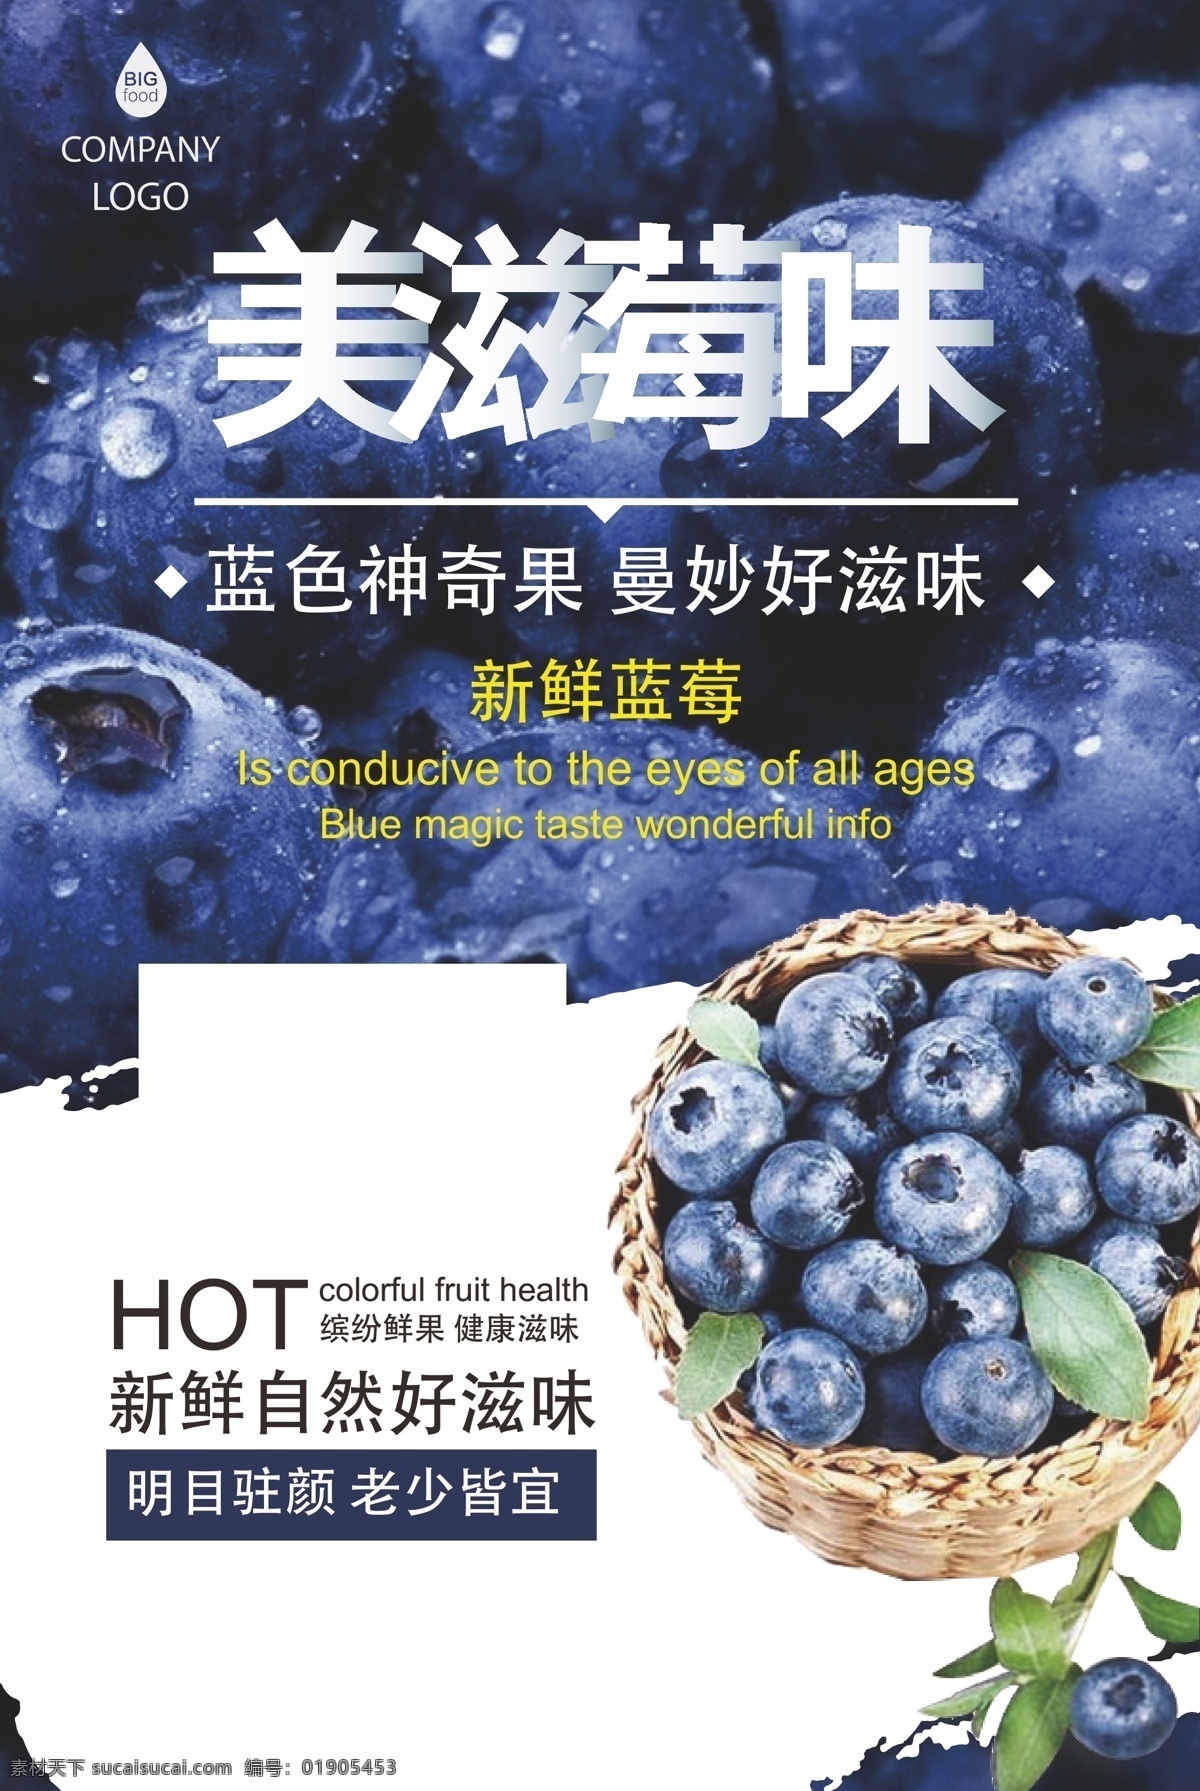 美食海报 美食 美味 蓝莓 草莓 水果 卡通 扁平化设计 创意 海报